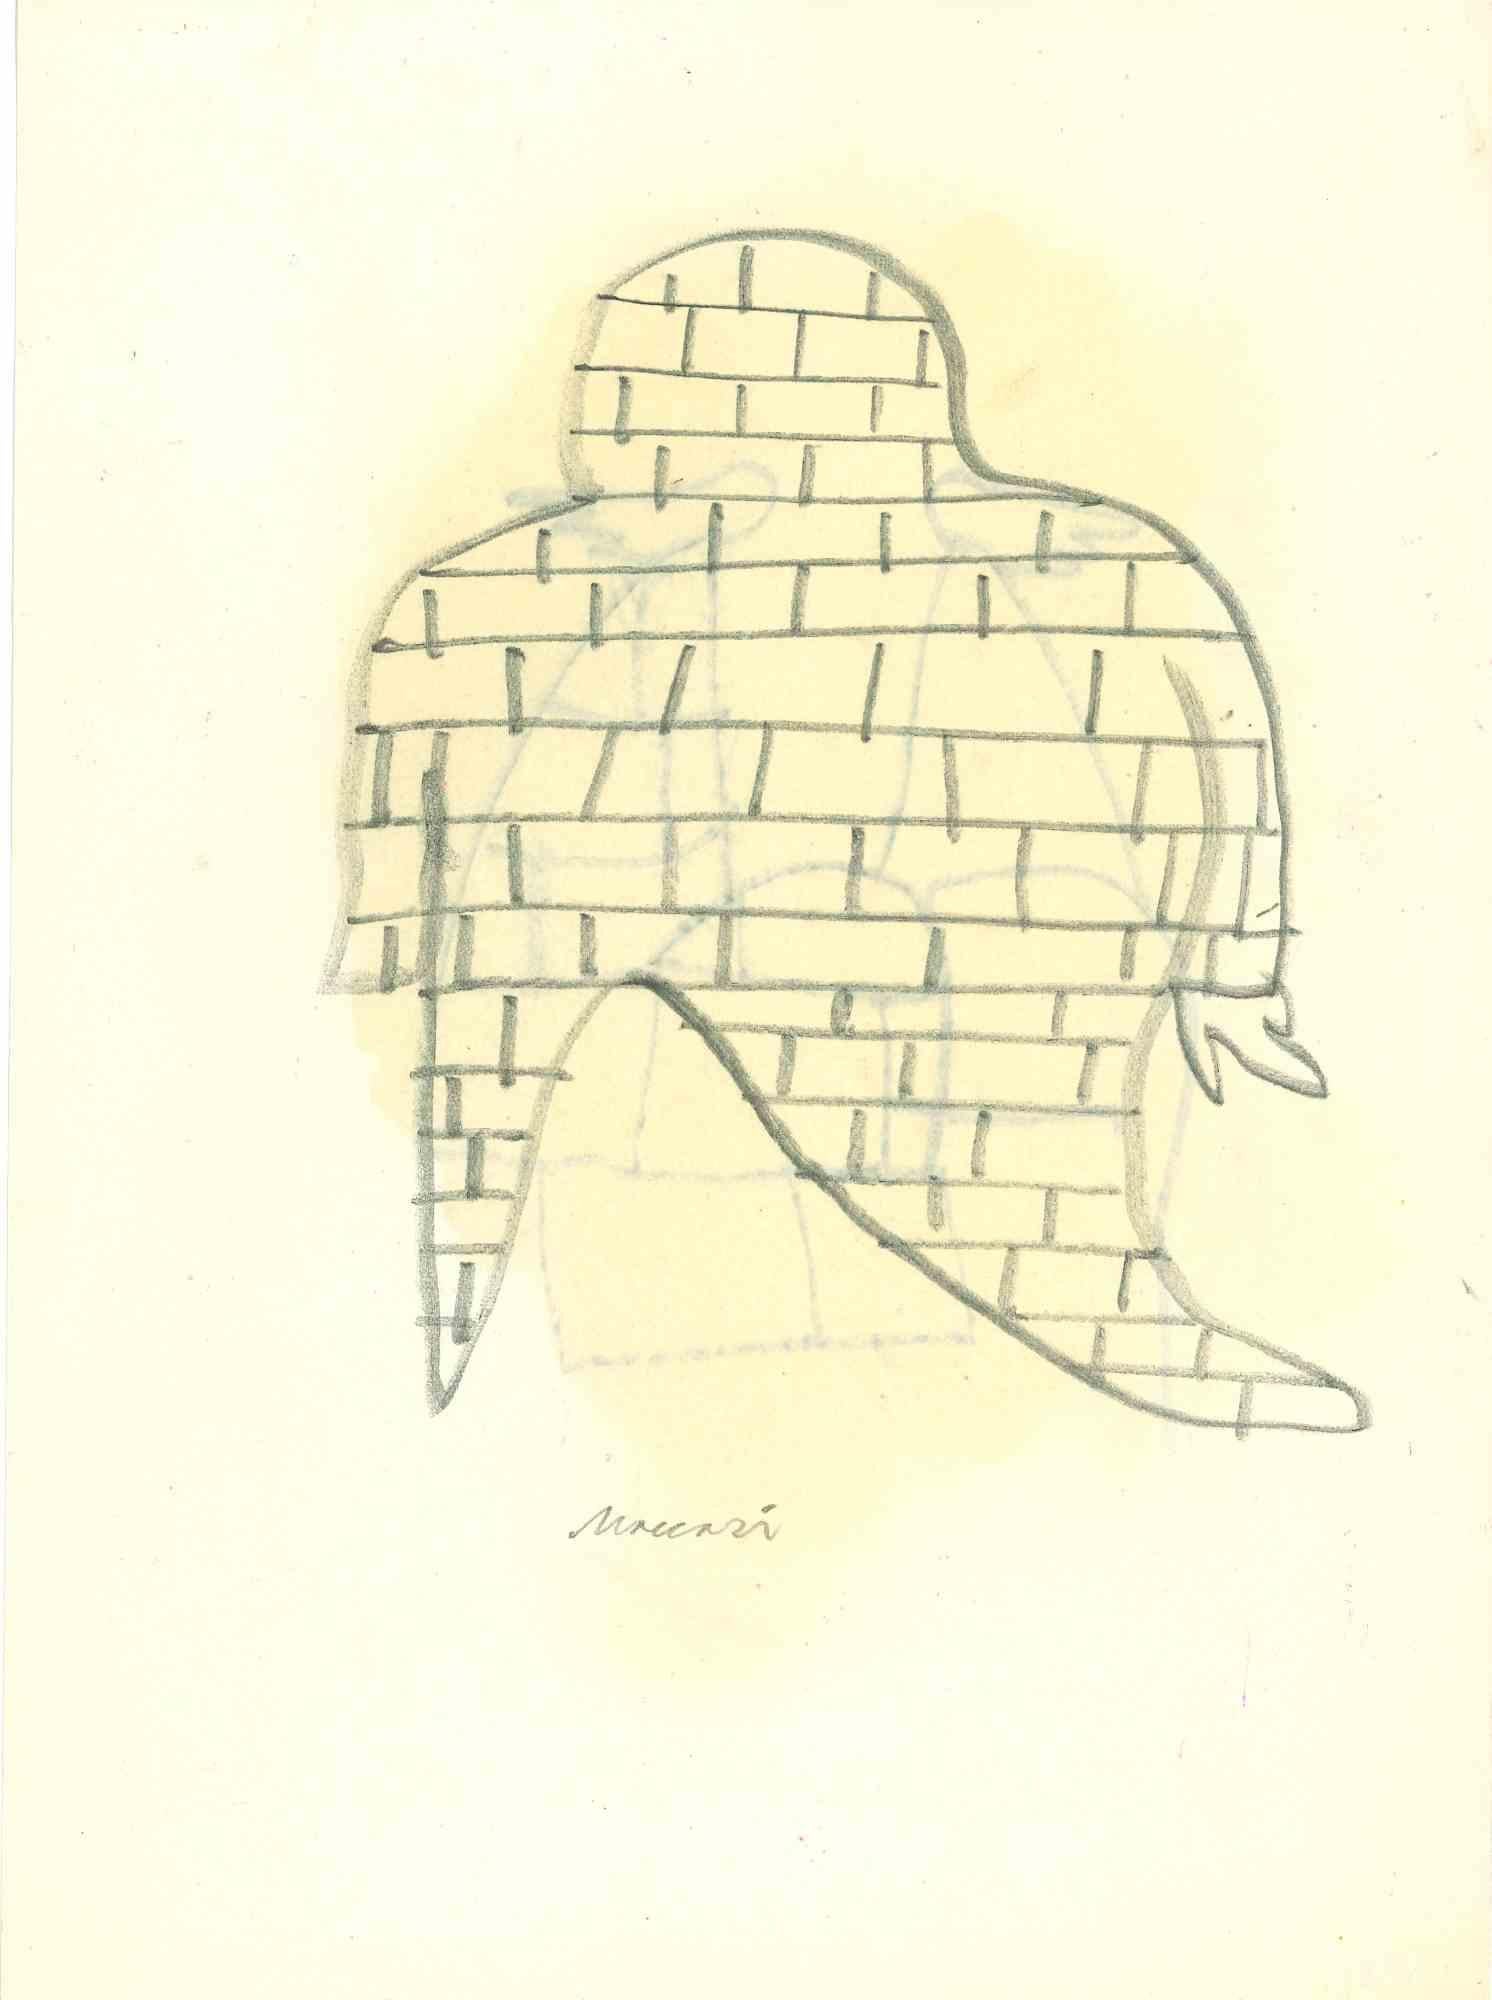 Abbildung ist eine Aquarellzeichnung von Mino Maccari (1924-1989) aus der Mitte des 20. Jahrhunderts.

Handsigniert.

Guter Zustand mit leichten Stockflecken.

Mino Maccari (Siena, 1924-Rom, 16. Juni 1989) war ein italienischer Schriftsteller,